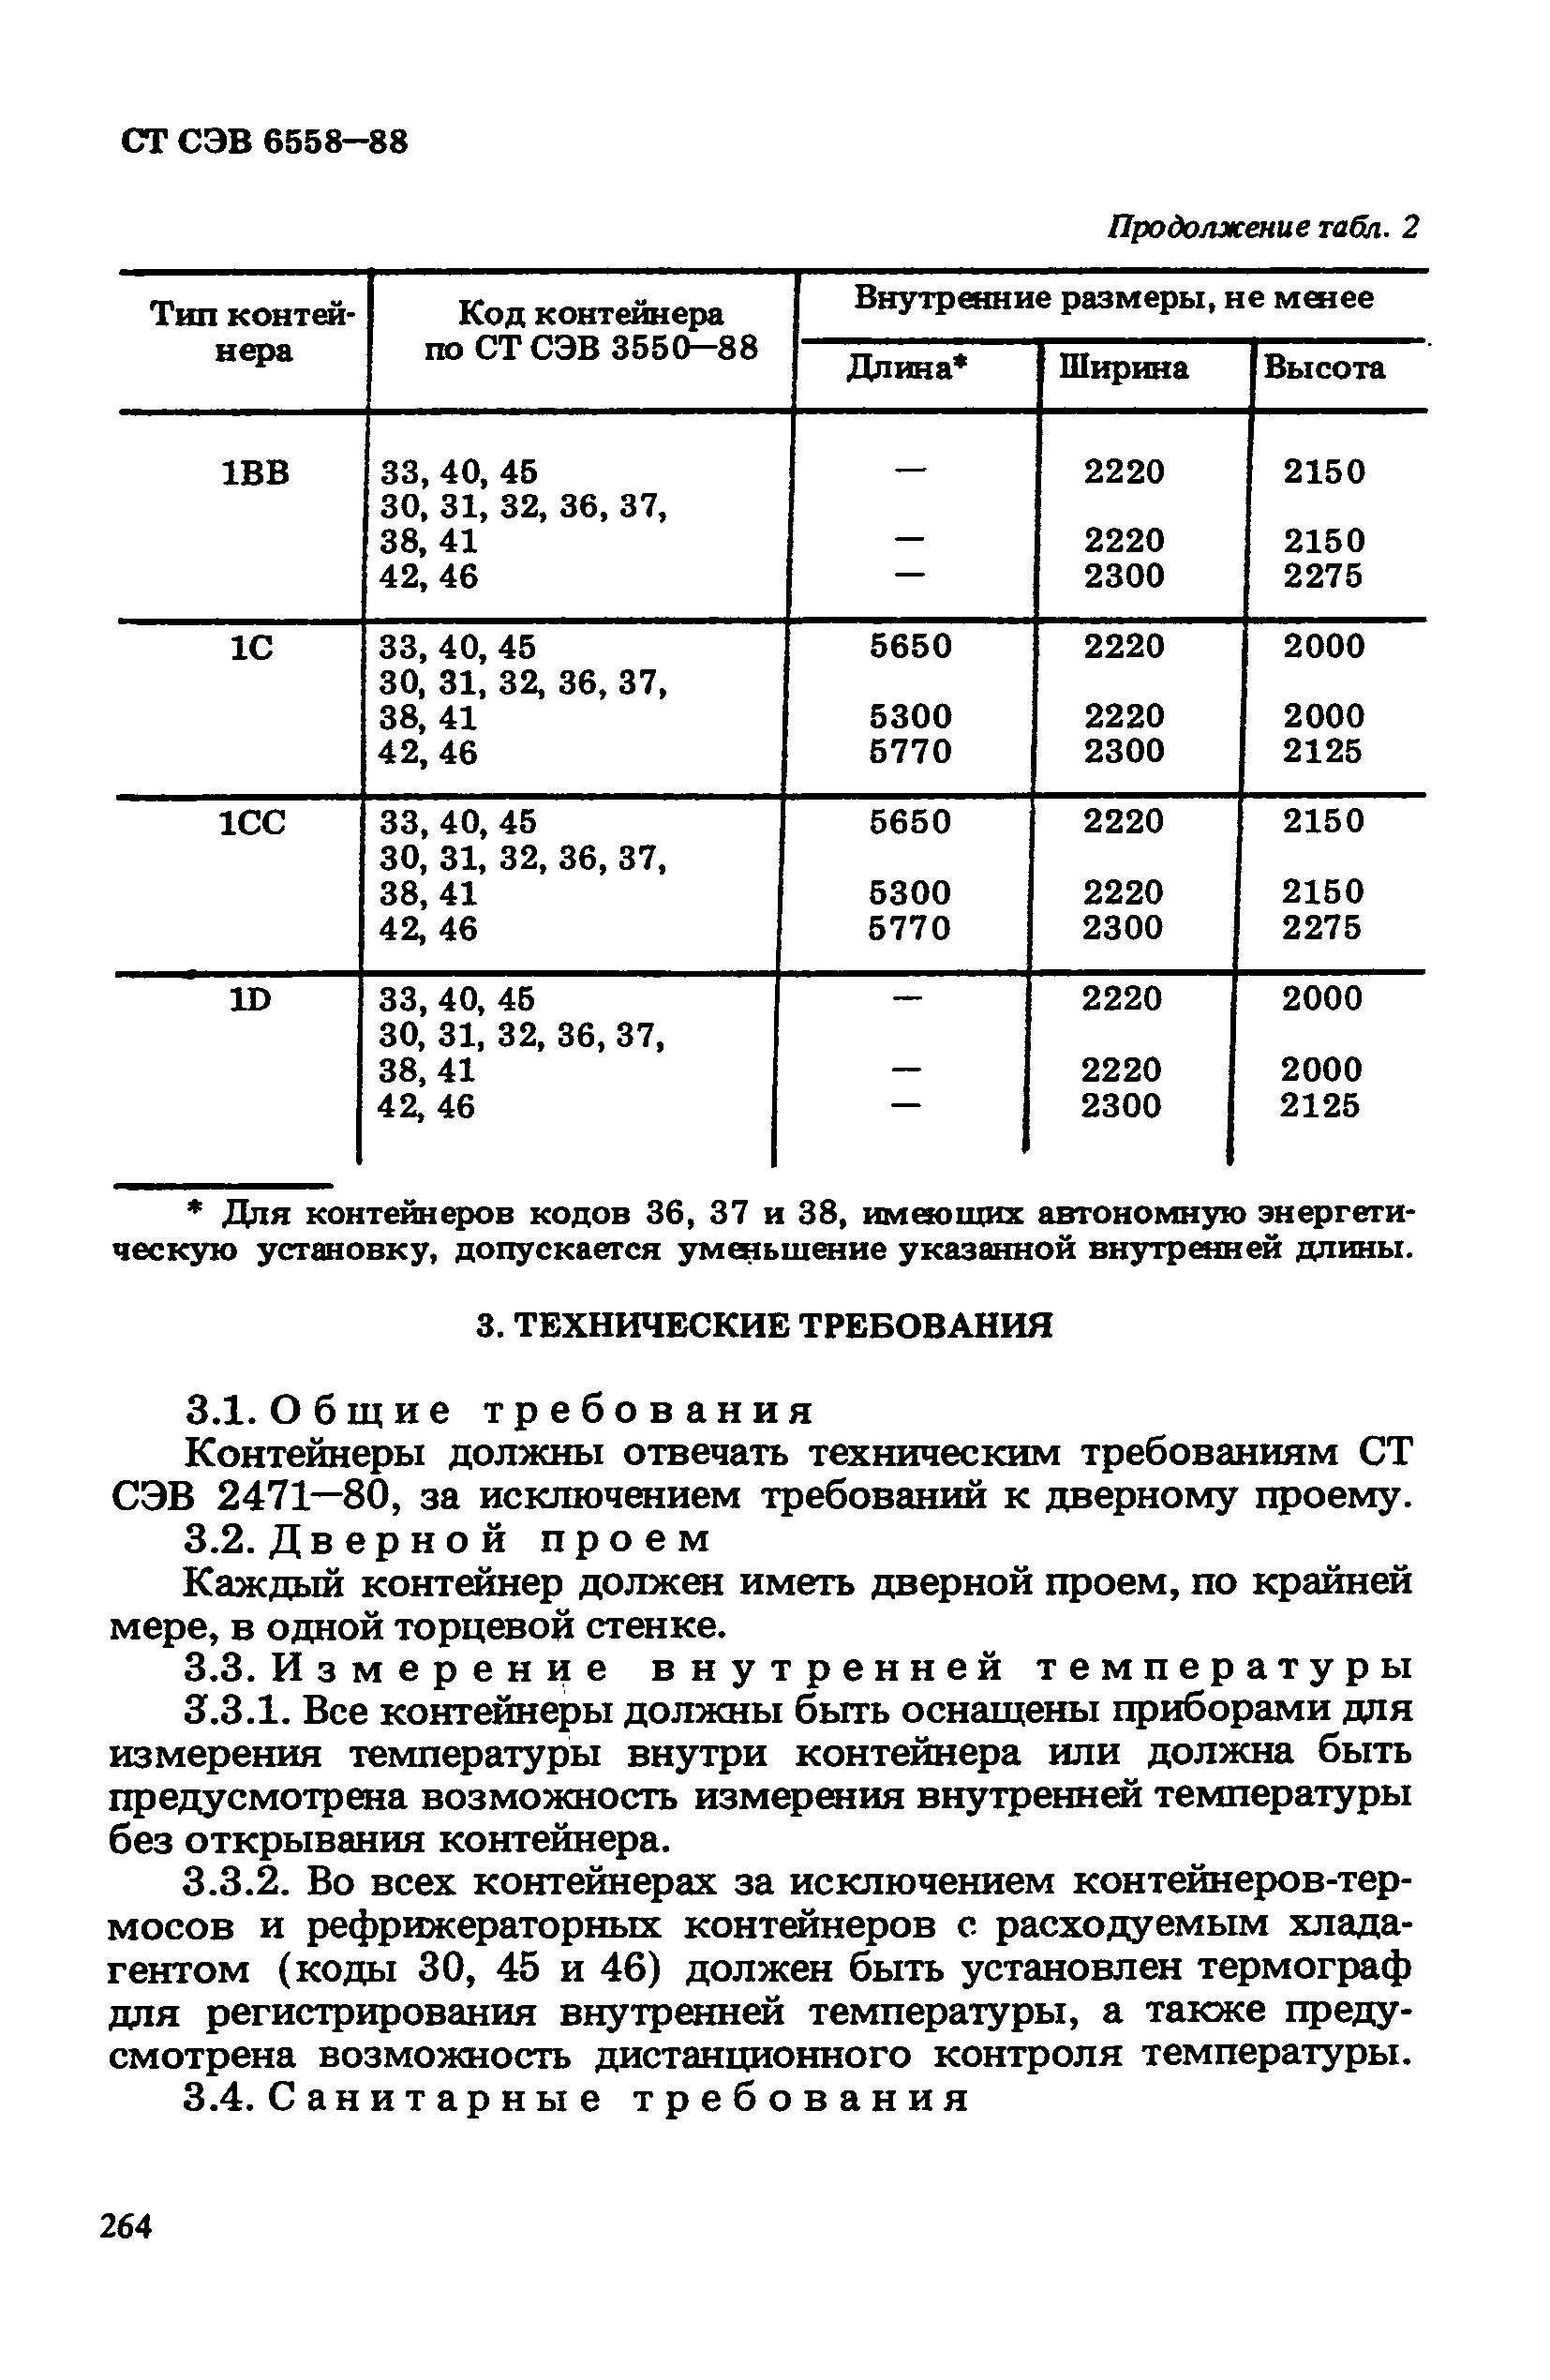 СТ СЭВ 6558-88